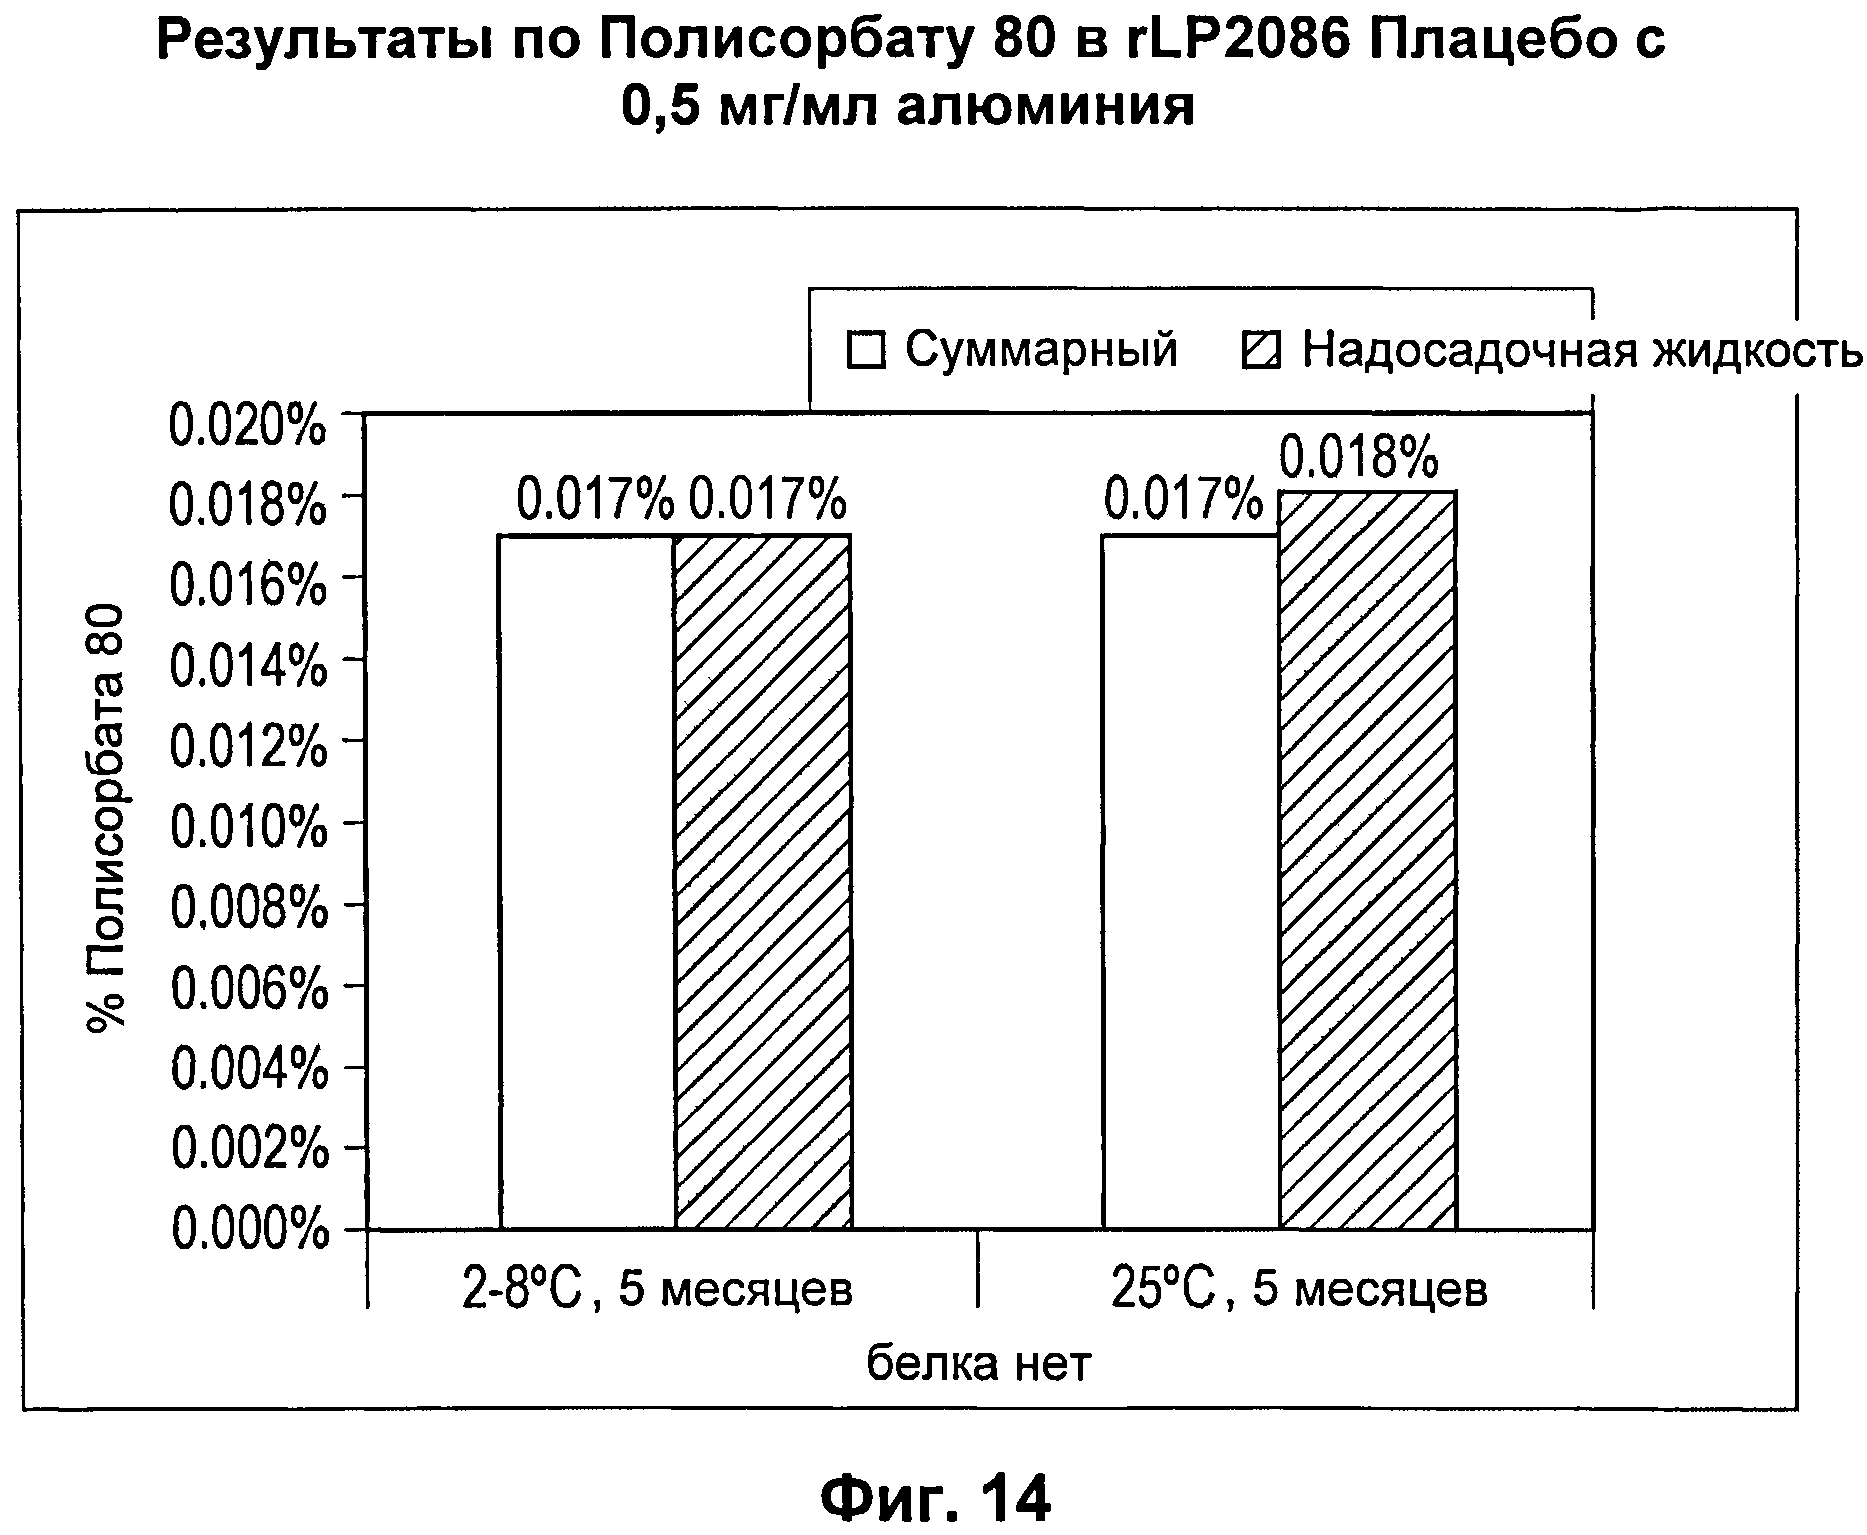 СТАБИЛЬНЫЕ КОМПОЗИЦИИ АНТИГЕНОВ Neisseria meningitidis rLP2086